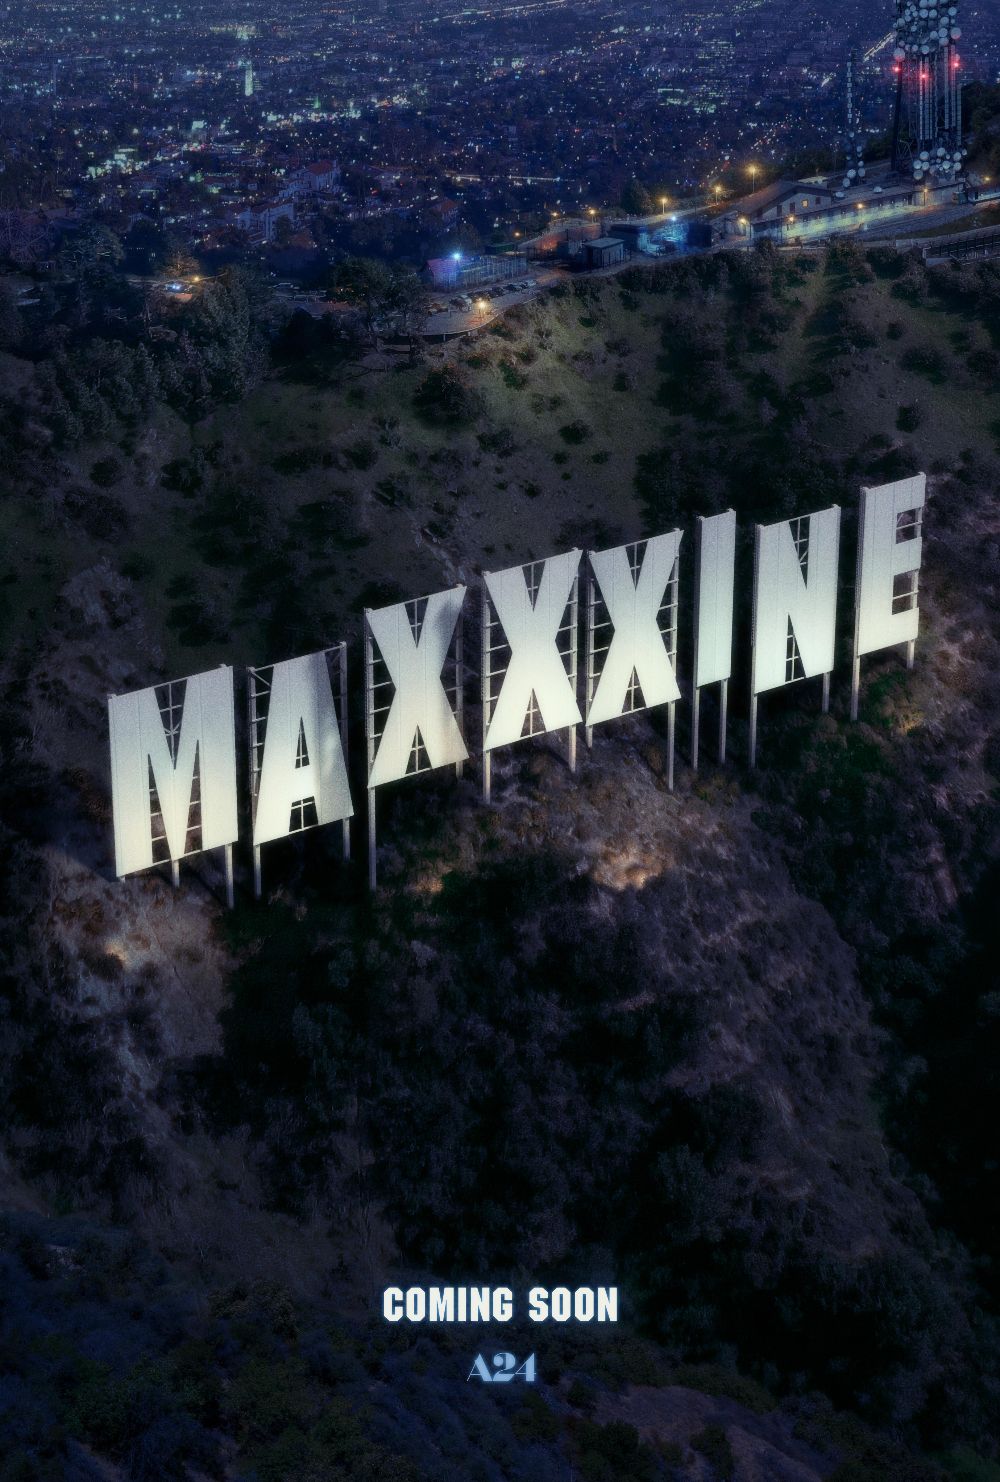 Maxxxine poster